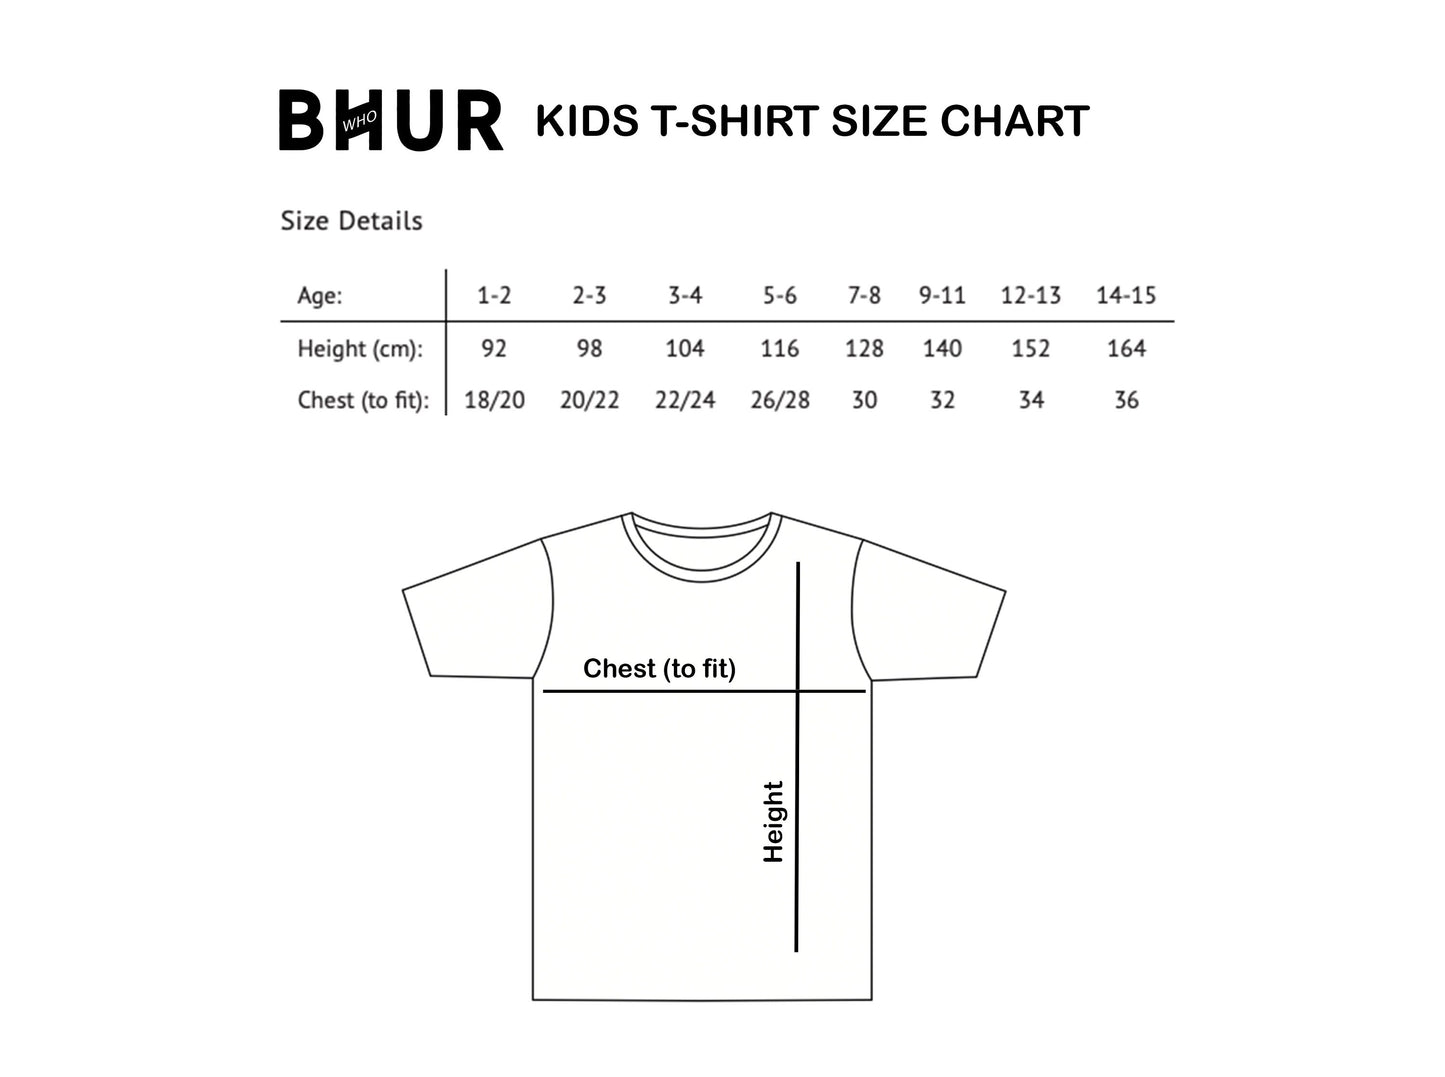 Big Sister Boho Kids T-Shirt, Promoted to Big Sister